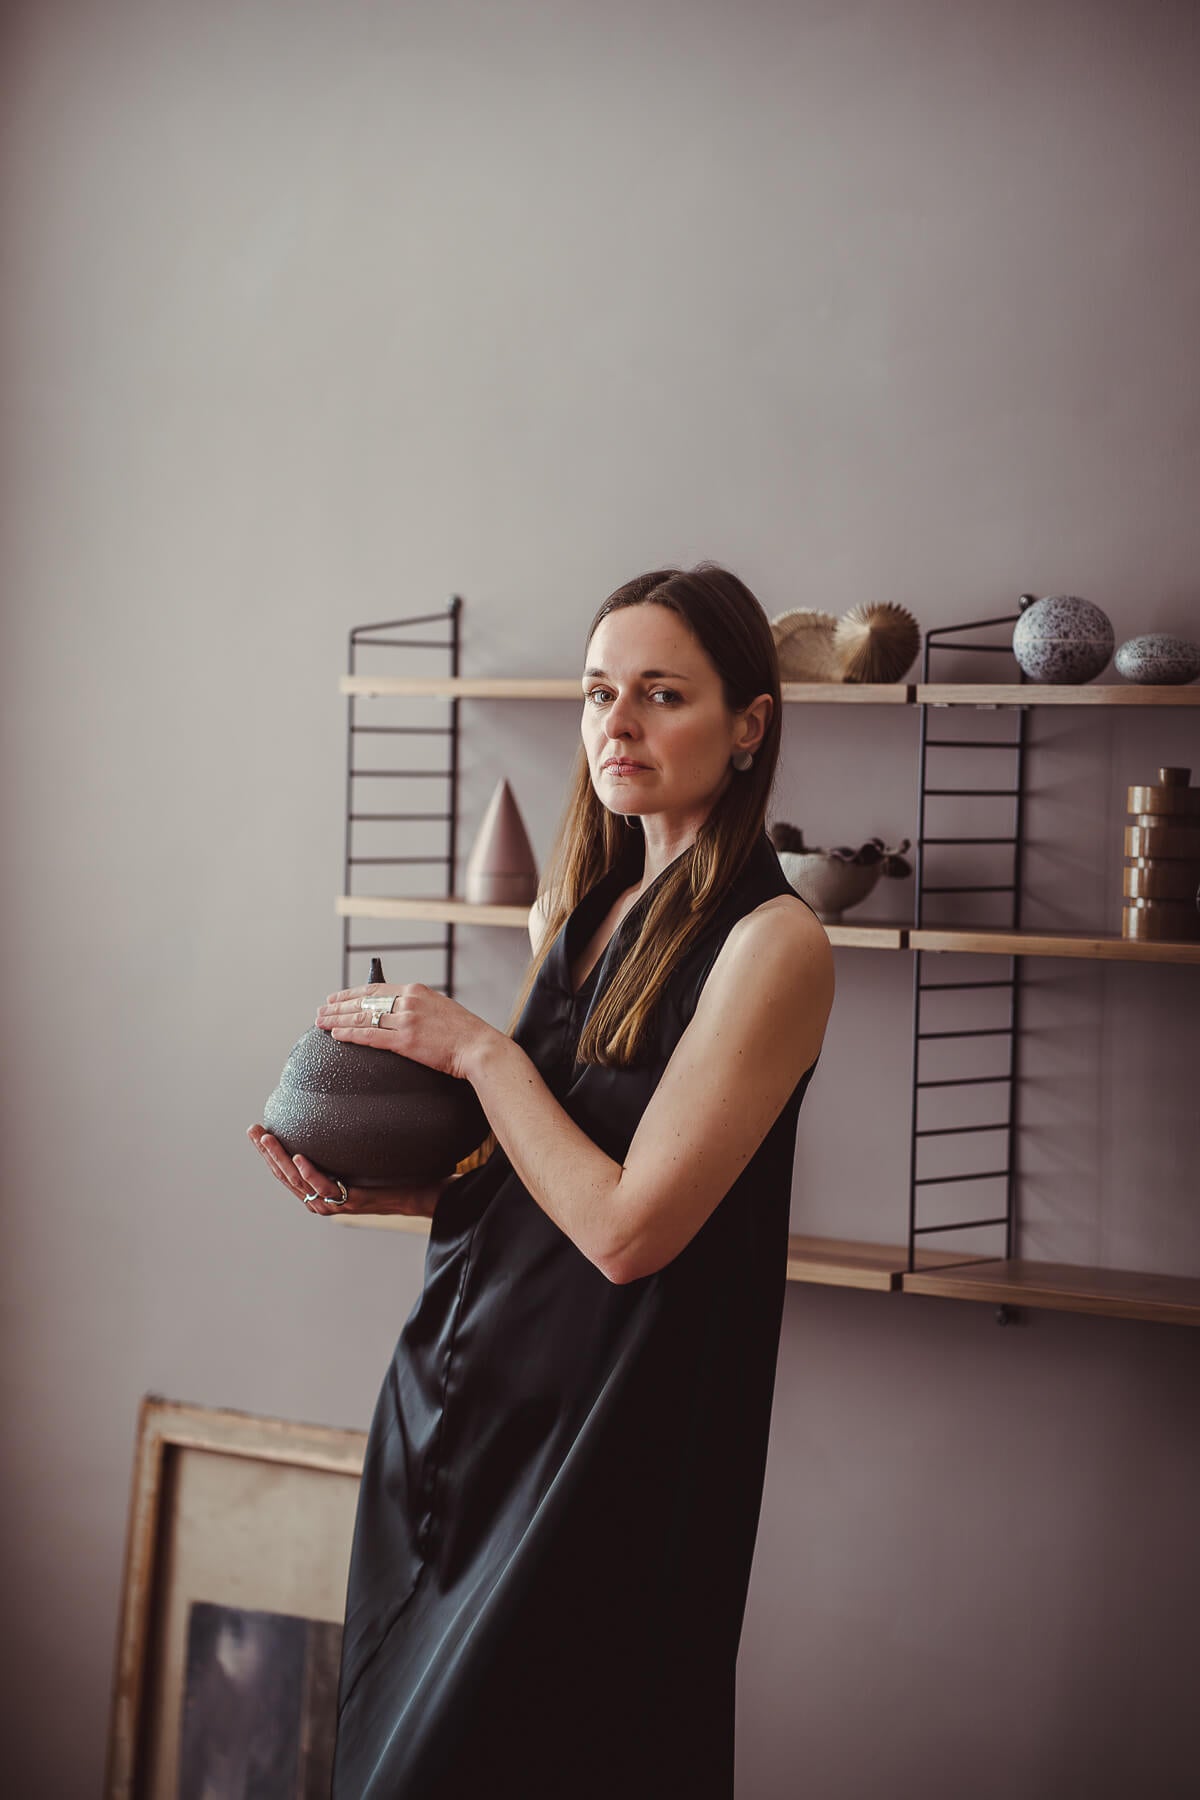 Evgeniia Kazarezova — Zheni studio Keramik Vase Keramikkunst – diesellerie.com